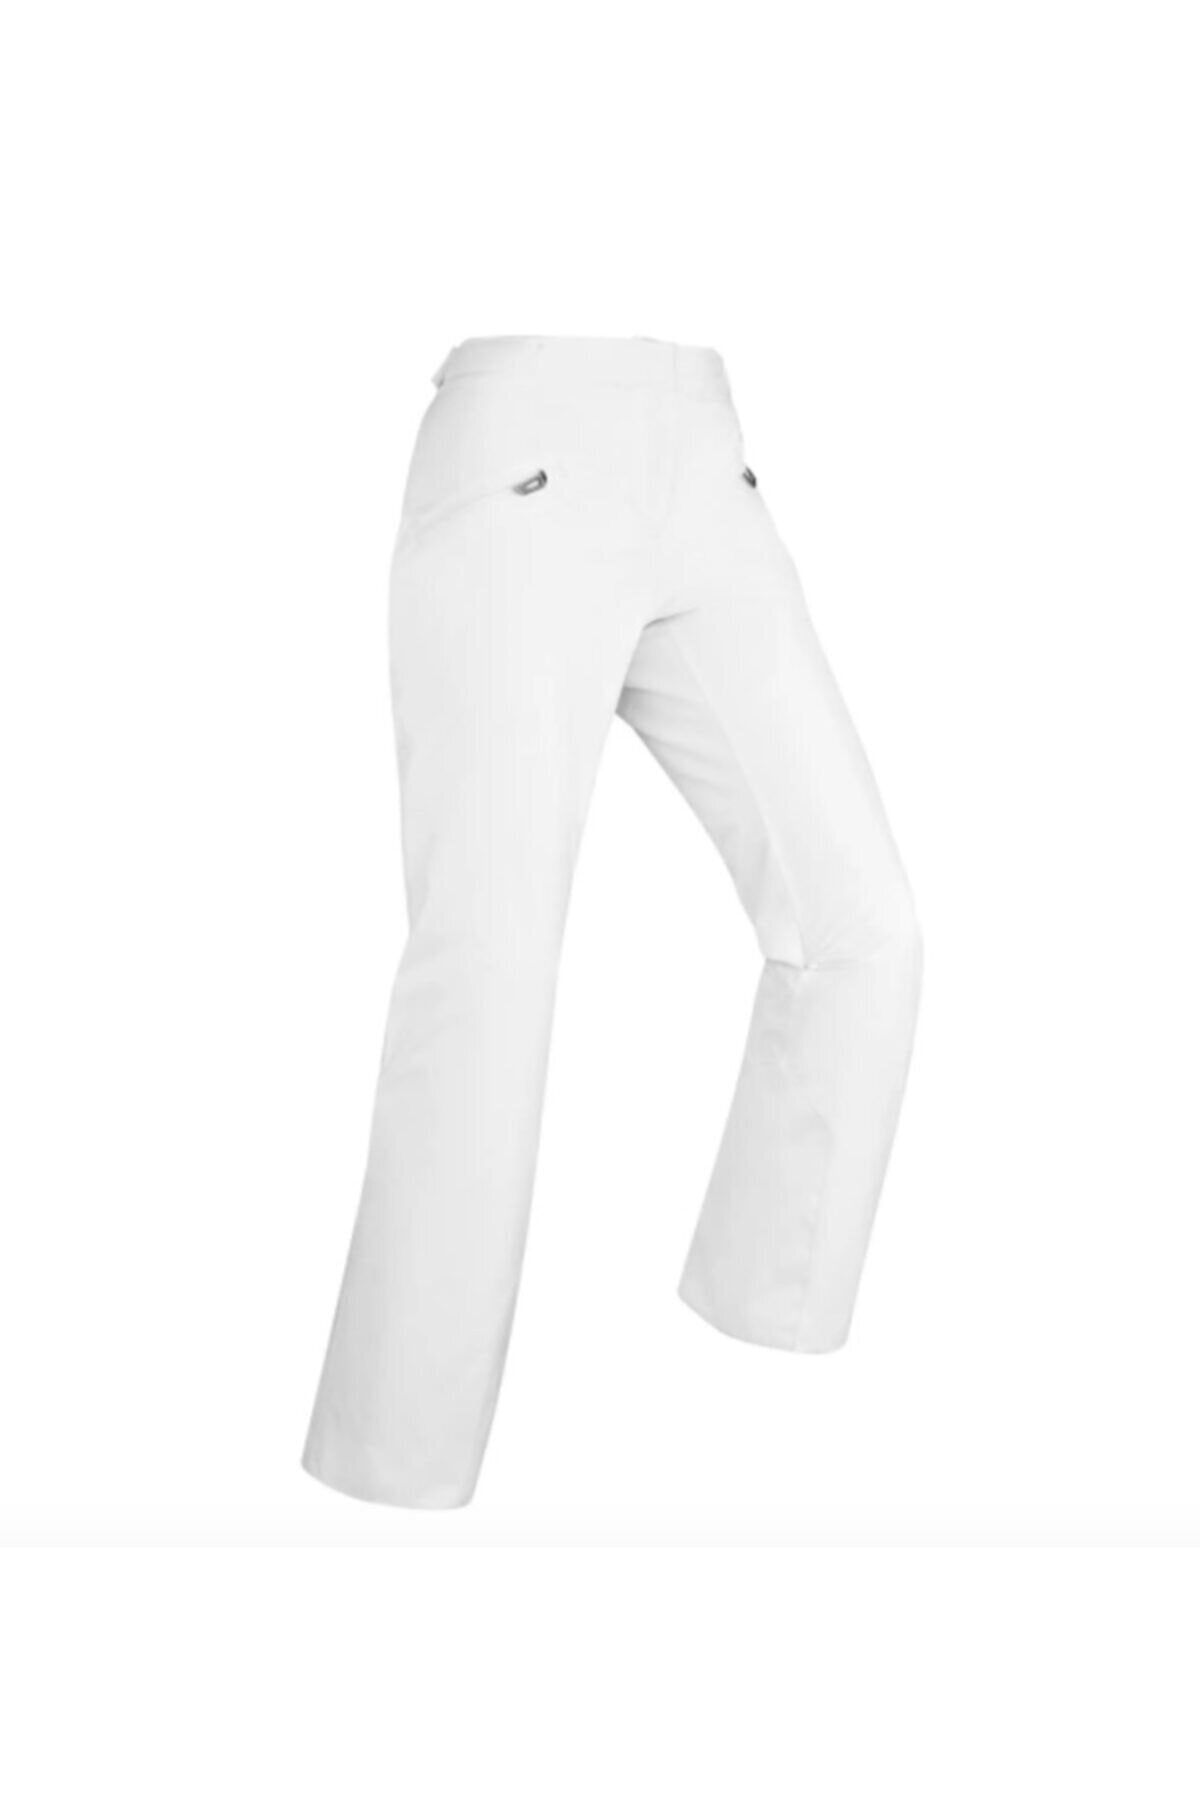 WEDZE Kadın Kayak Pantolonu - Beyaz - 180